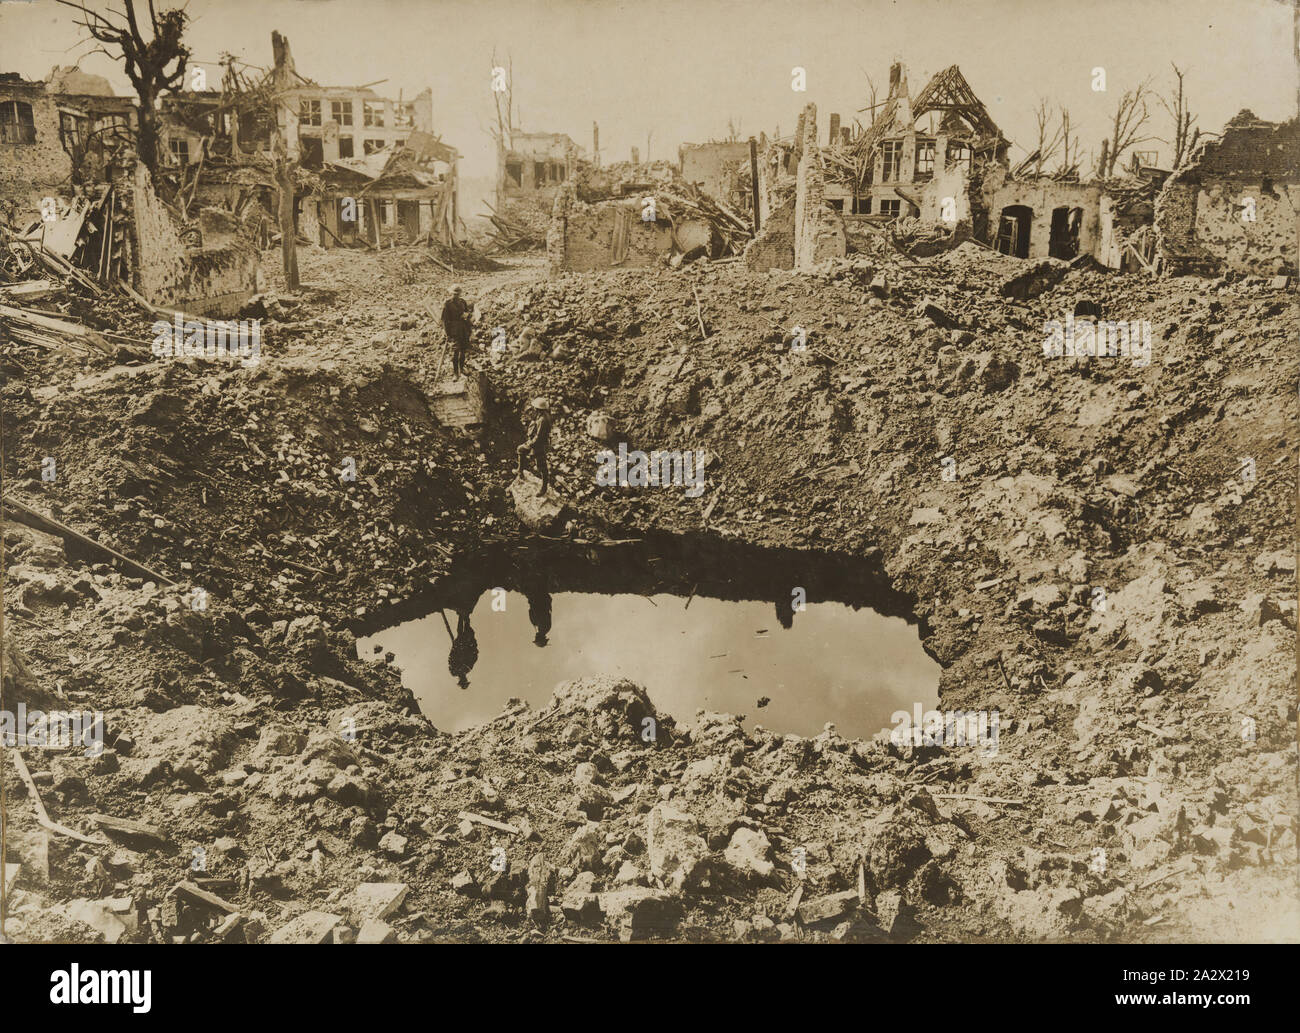 [Armourfast] Stug 33B pour tenir compagnie à PZMR + un peu de scratch. ( FINI) Photographie-un-grand-cratere-ypres-belgique-la-premiere-guerre-mondiale-le-25-septembre-1917-photographie-d-un-cratere-de-bombe-au-milieu-de-la-ville-au-lendemain-de-la-bataille-d-ypres-belgique-la-bataille-de-la-route-de-menin-est-produite-20-25-septembre-1917-il-a-fait-partie-de-la-troisieme-bataille-d-ypres-sur-le-front-de-l-ouest-2a2x219